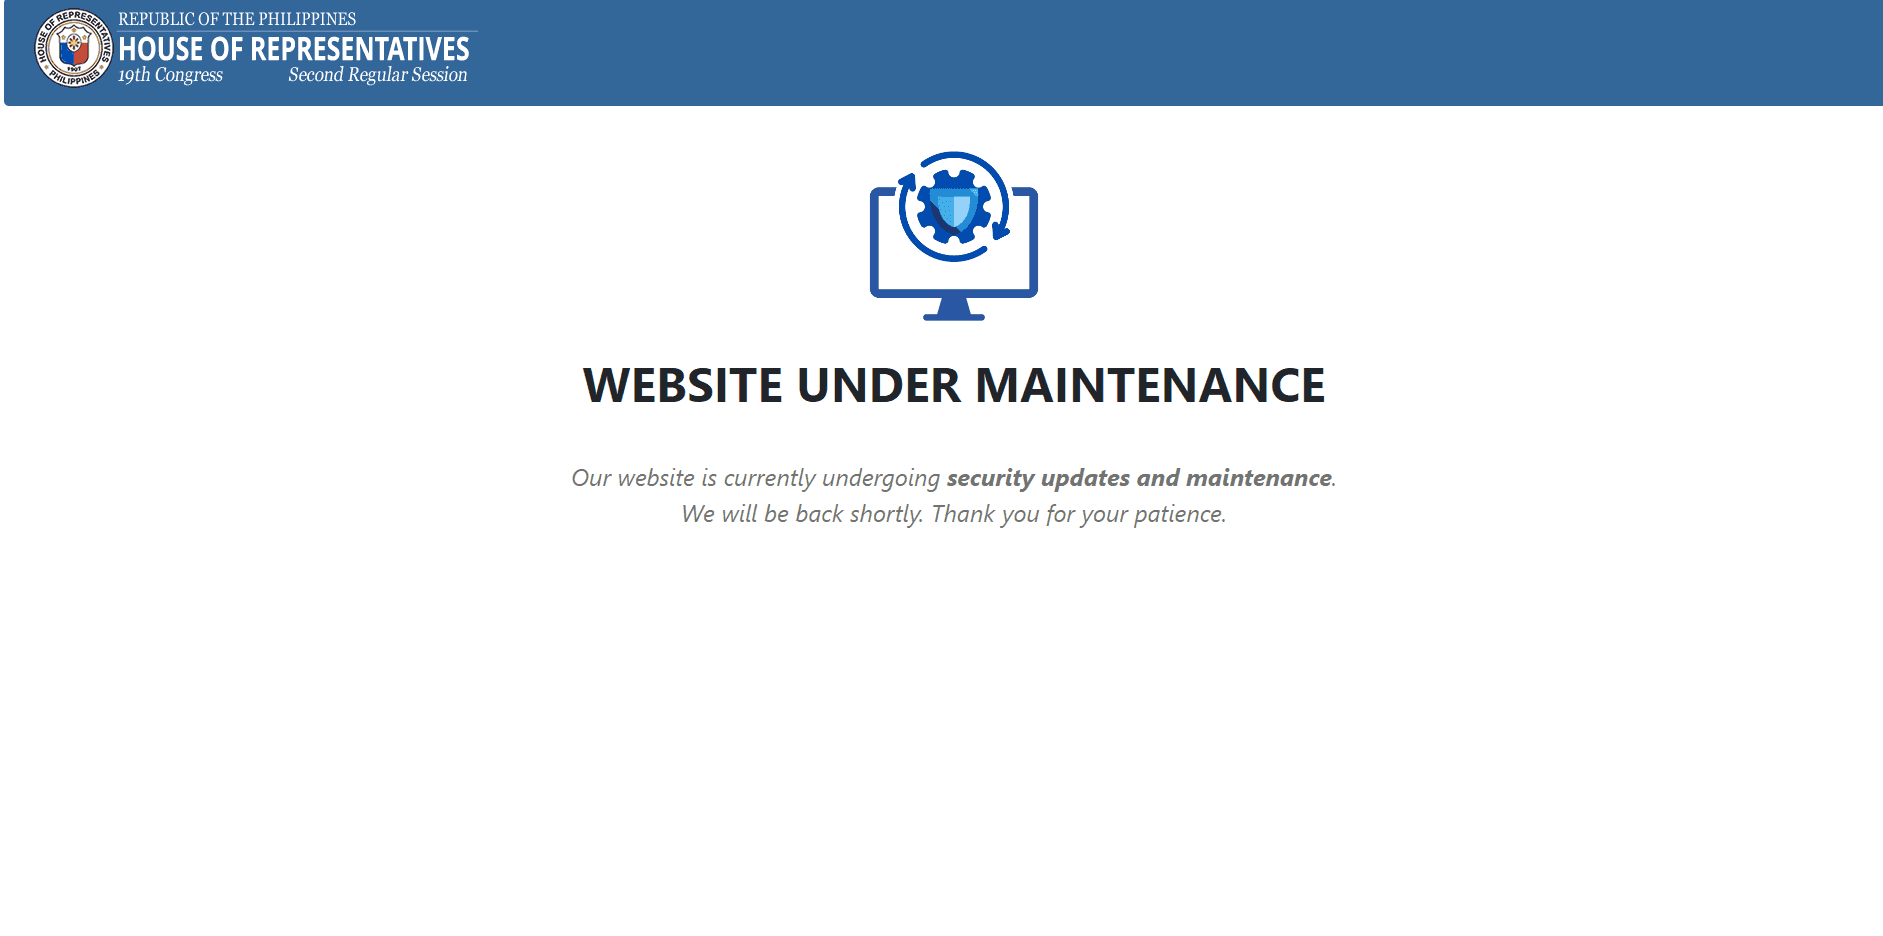 Lower House's website 'voluntarily taken offline' due to detected suspicious activities